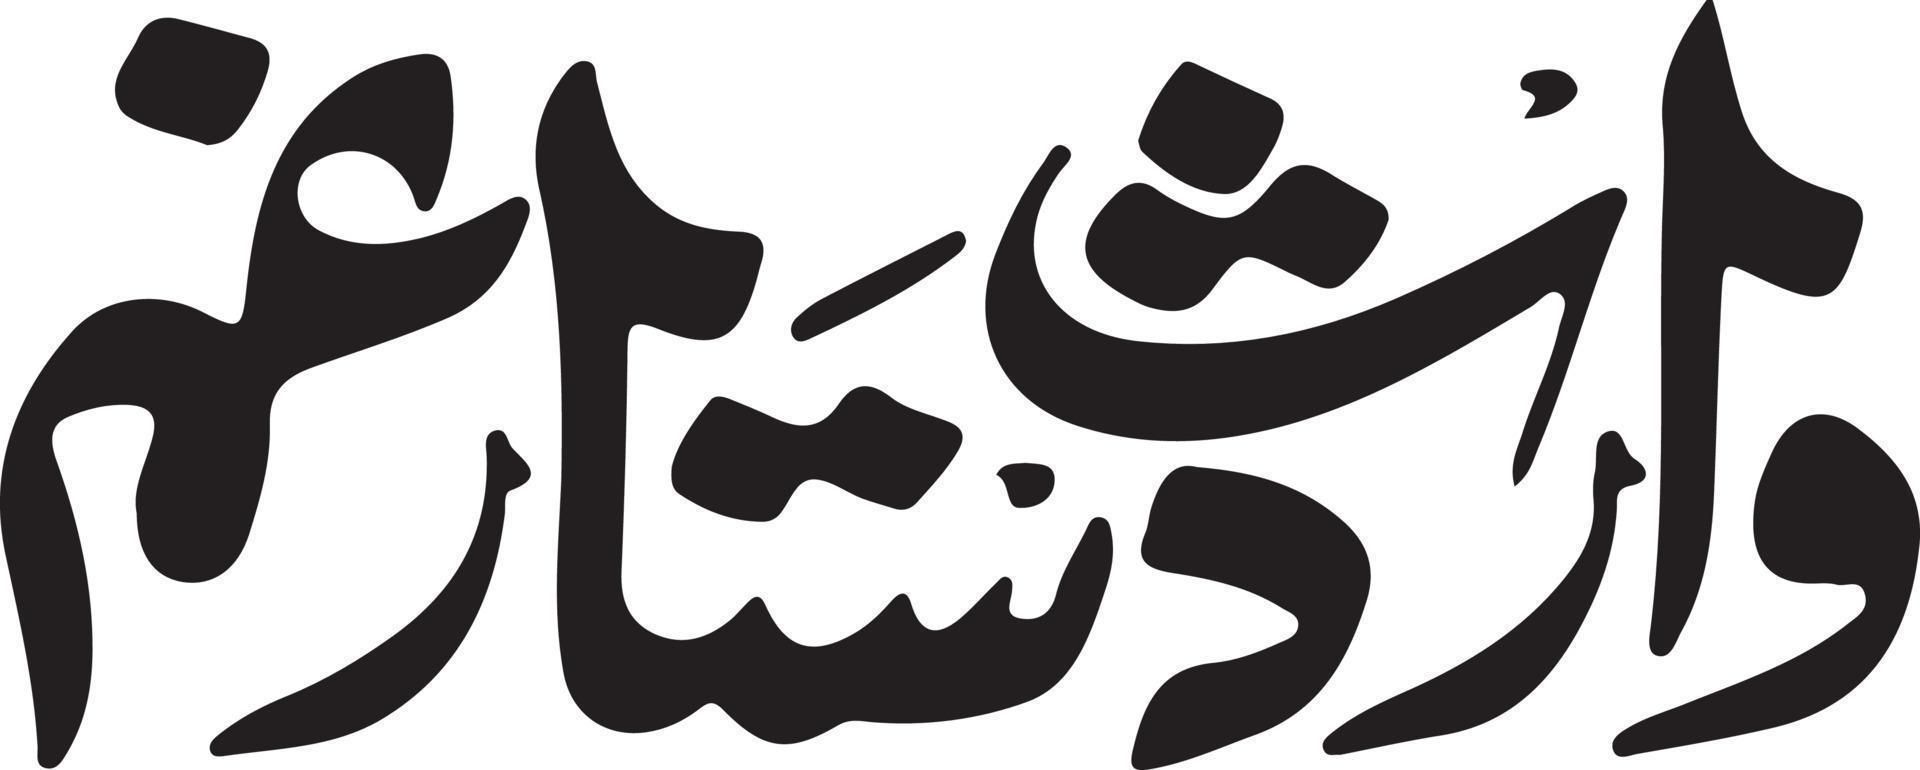 waris dastar chicle caligrafía islámica vector libre